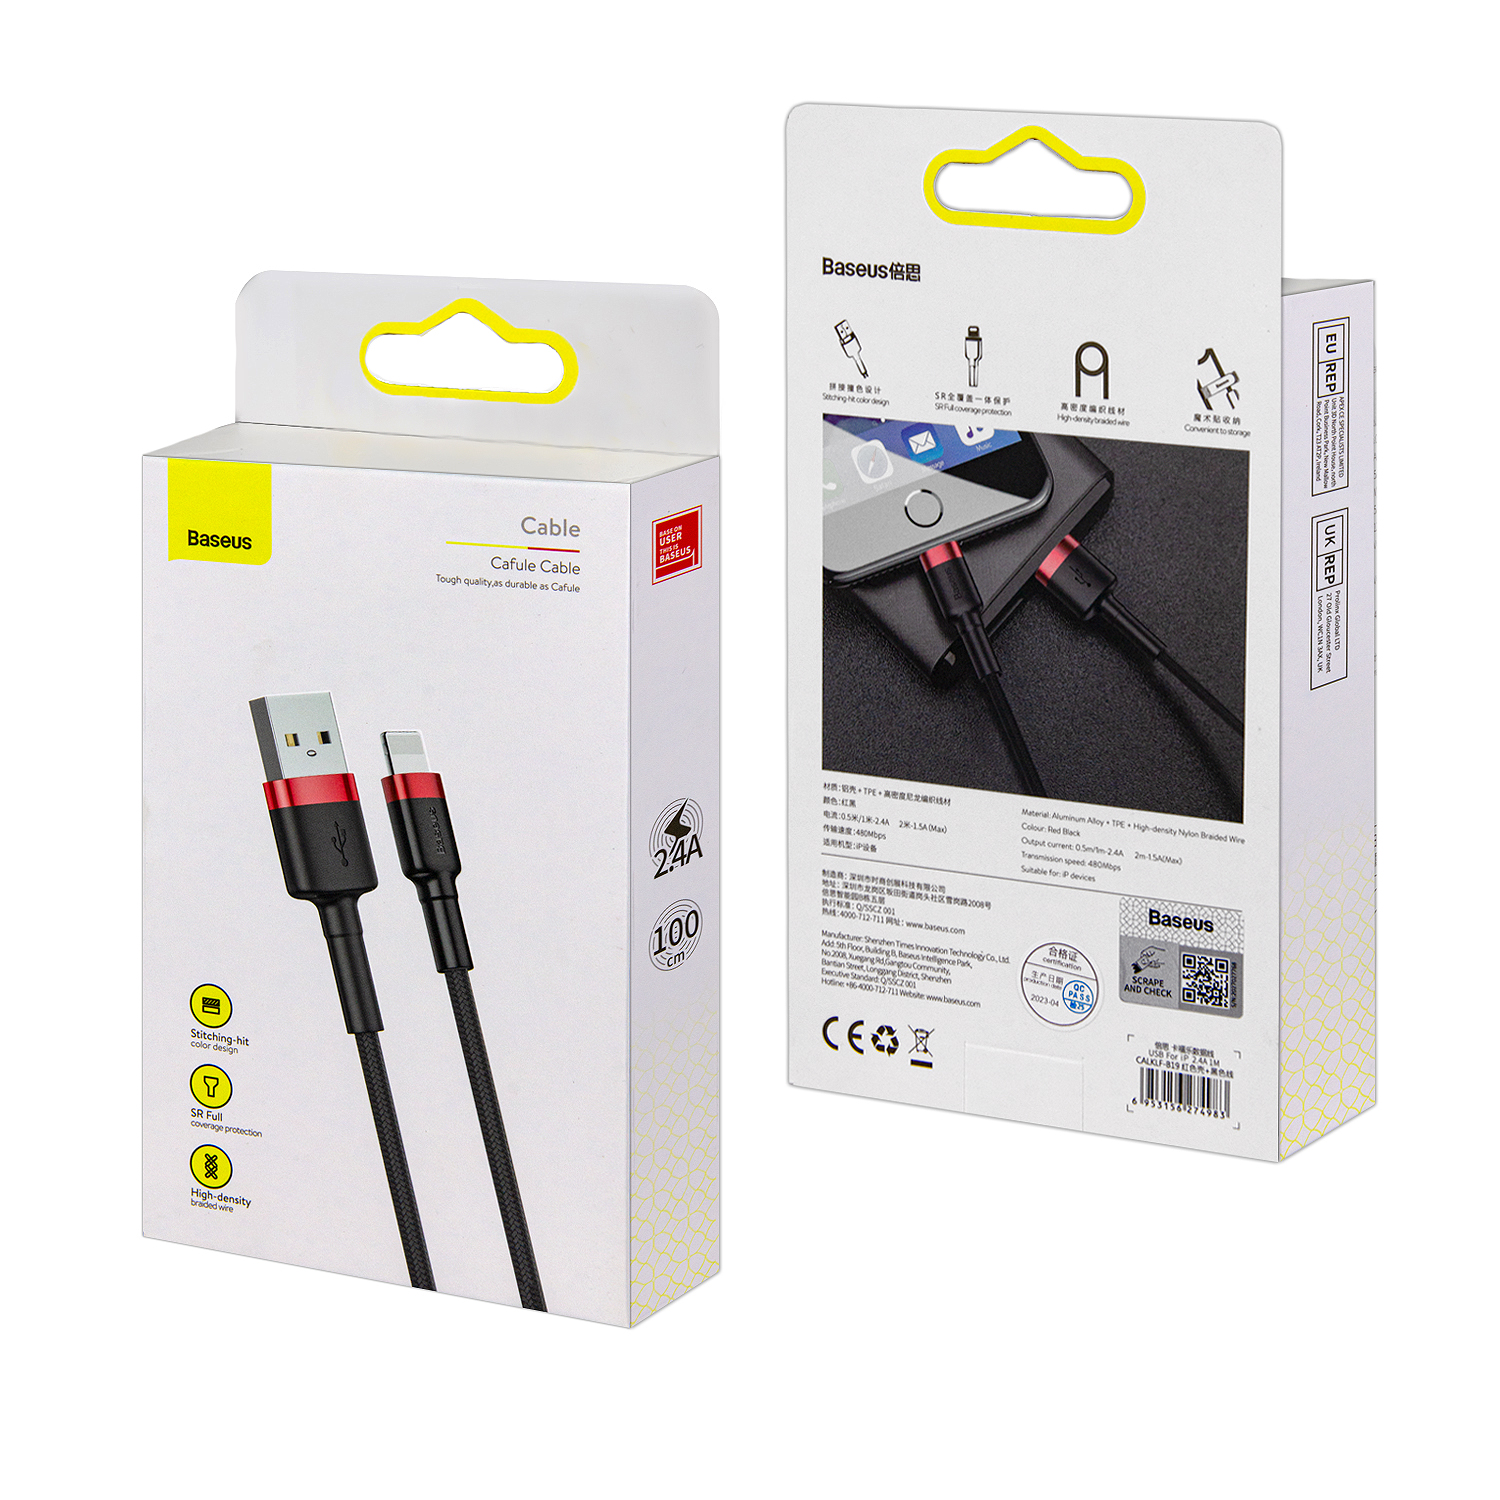 Кабель USB Lightning 1M 2.4A Cafule Cable Baseus черный с красным CALKLF-B19